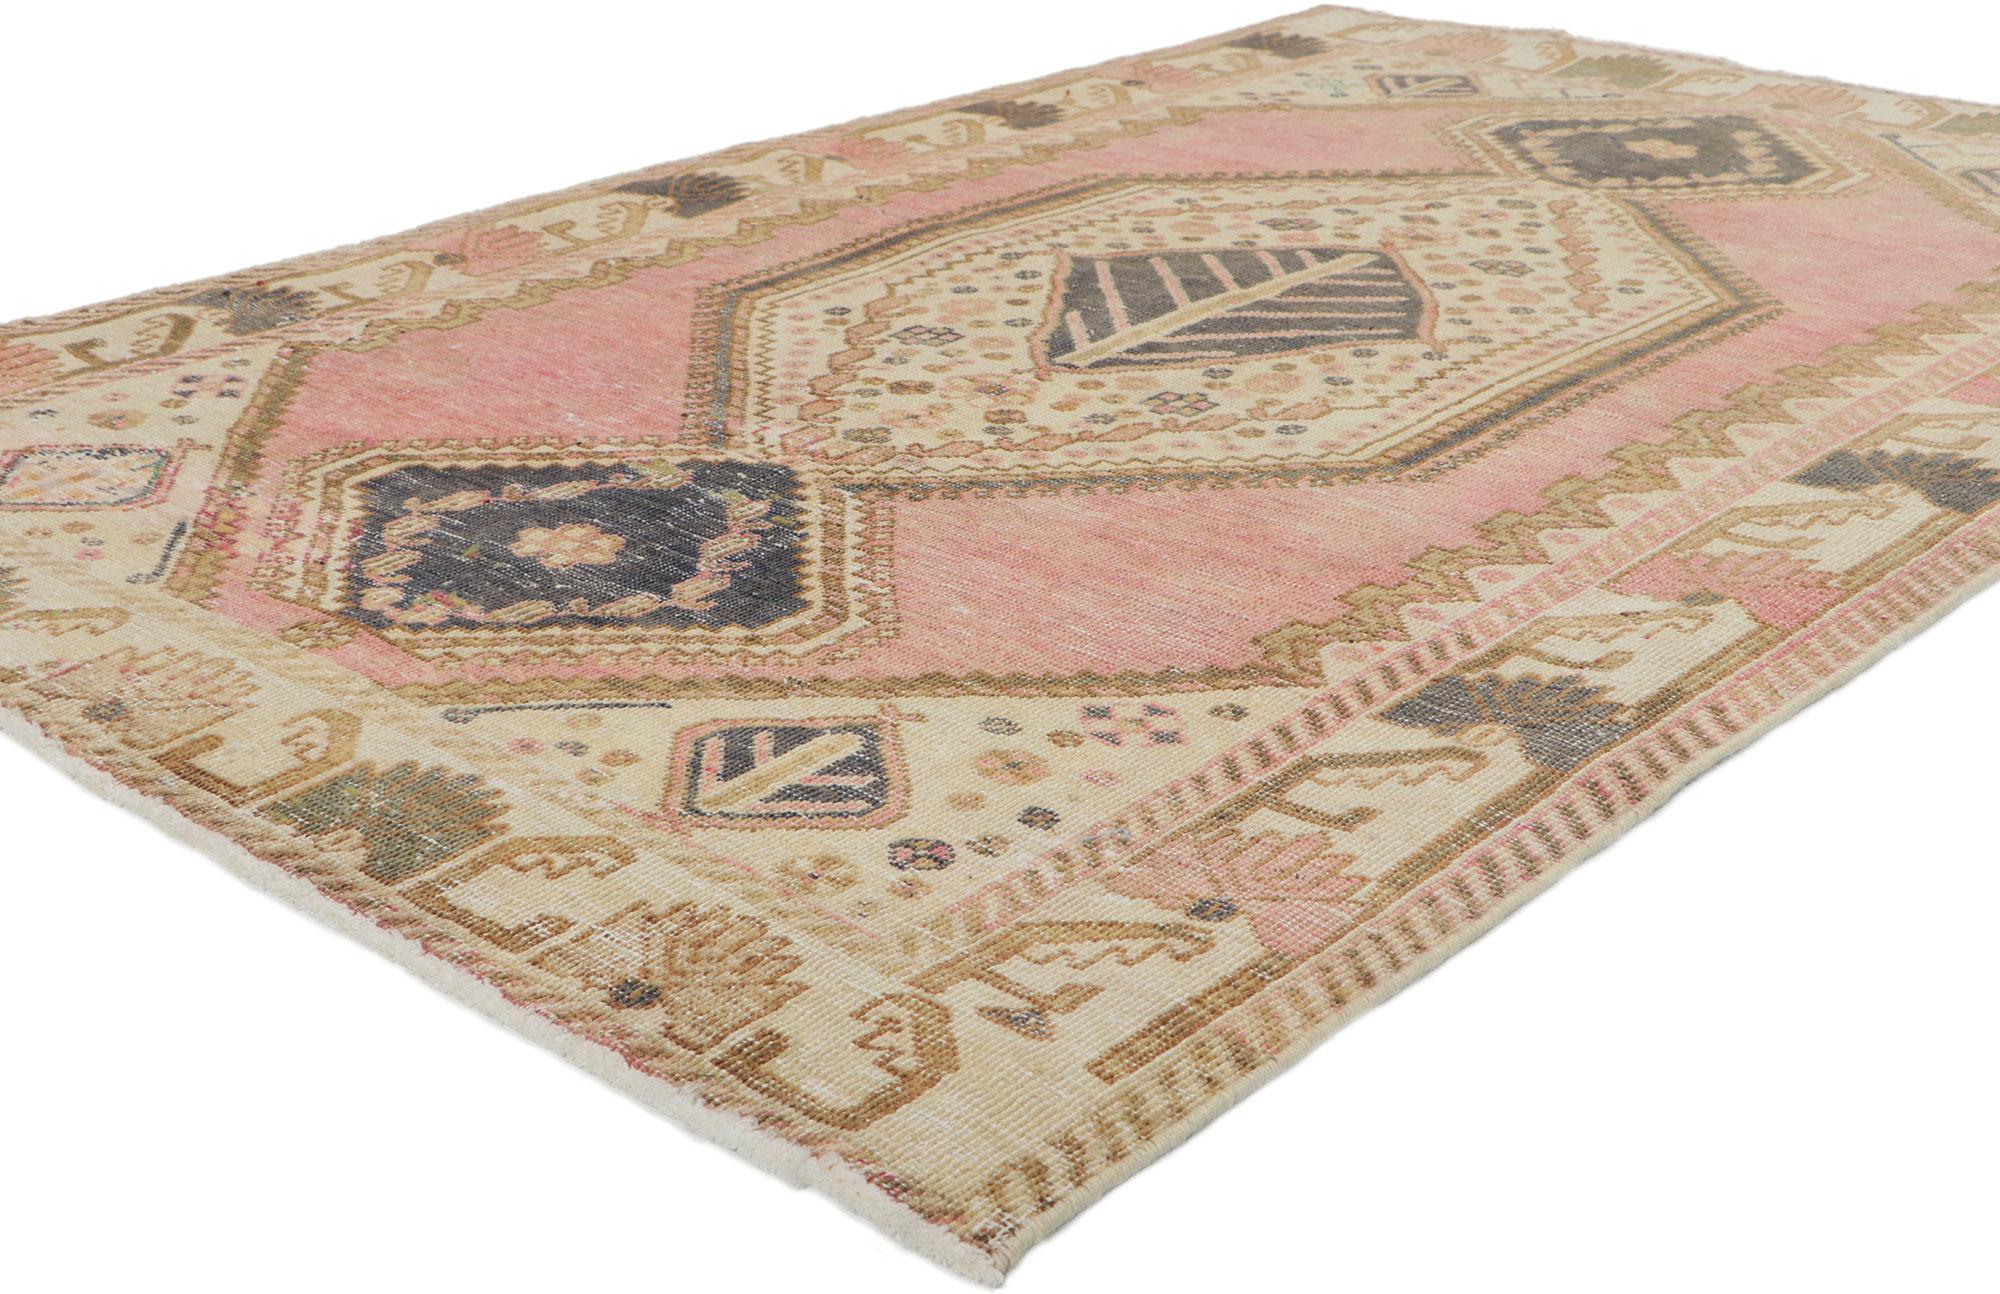 61138 Vintage Persian Malayer Teppich, 04'04 x 06'10. Mit seiner robusten Schönheit und zeitlosem Design, ist diese handgeknüpfte Wolle antiken persischen Malayer Teppich bereit zu beeindrucken. Das auffällige geometrische Muster und die mit der